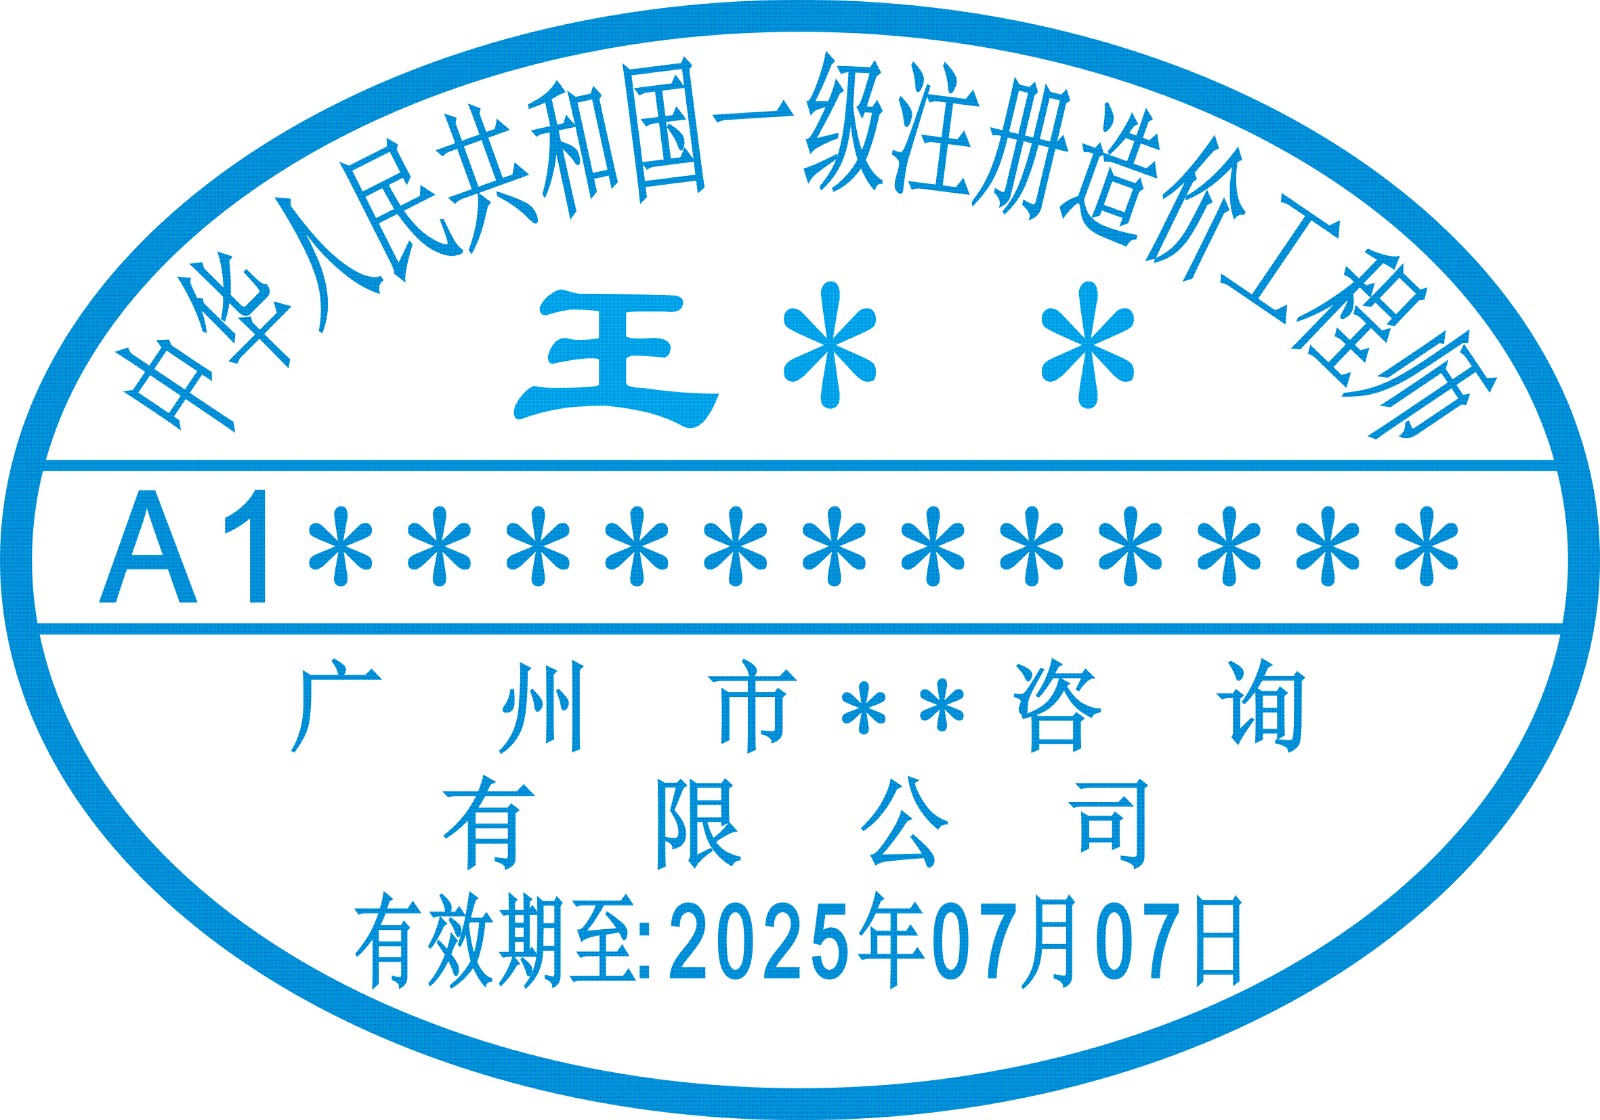 印章有限公司是公安局指定的(广州各区)印章备案单位特种行业许可证号